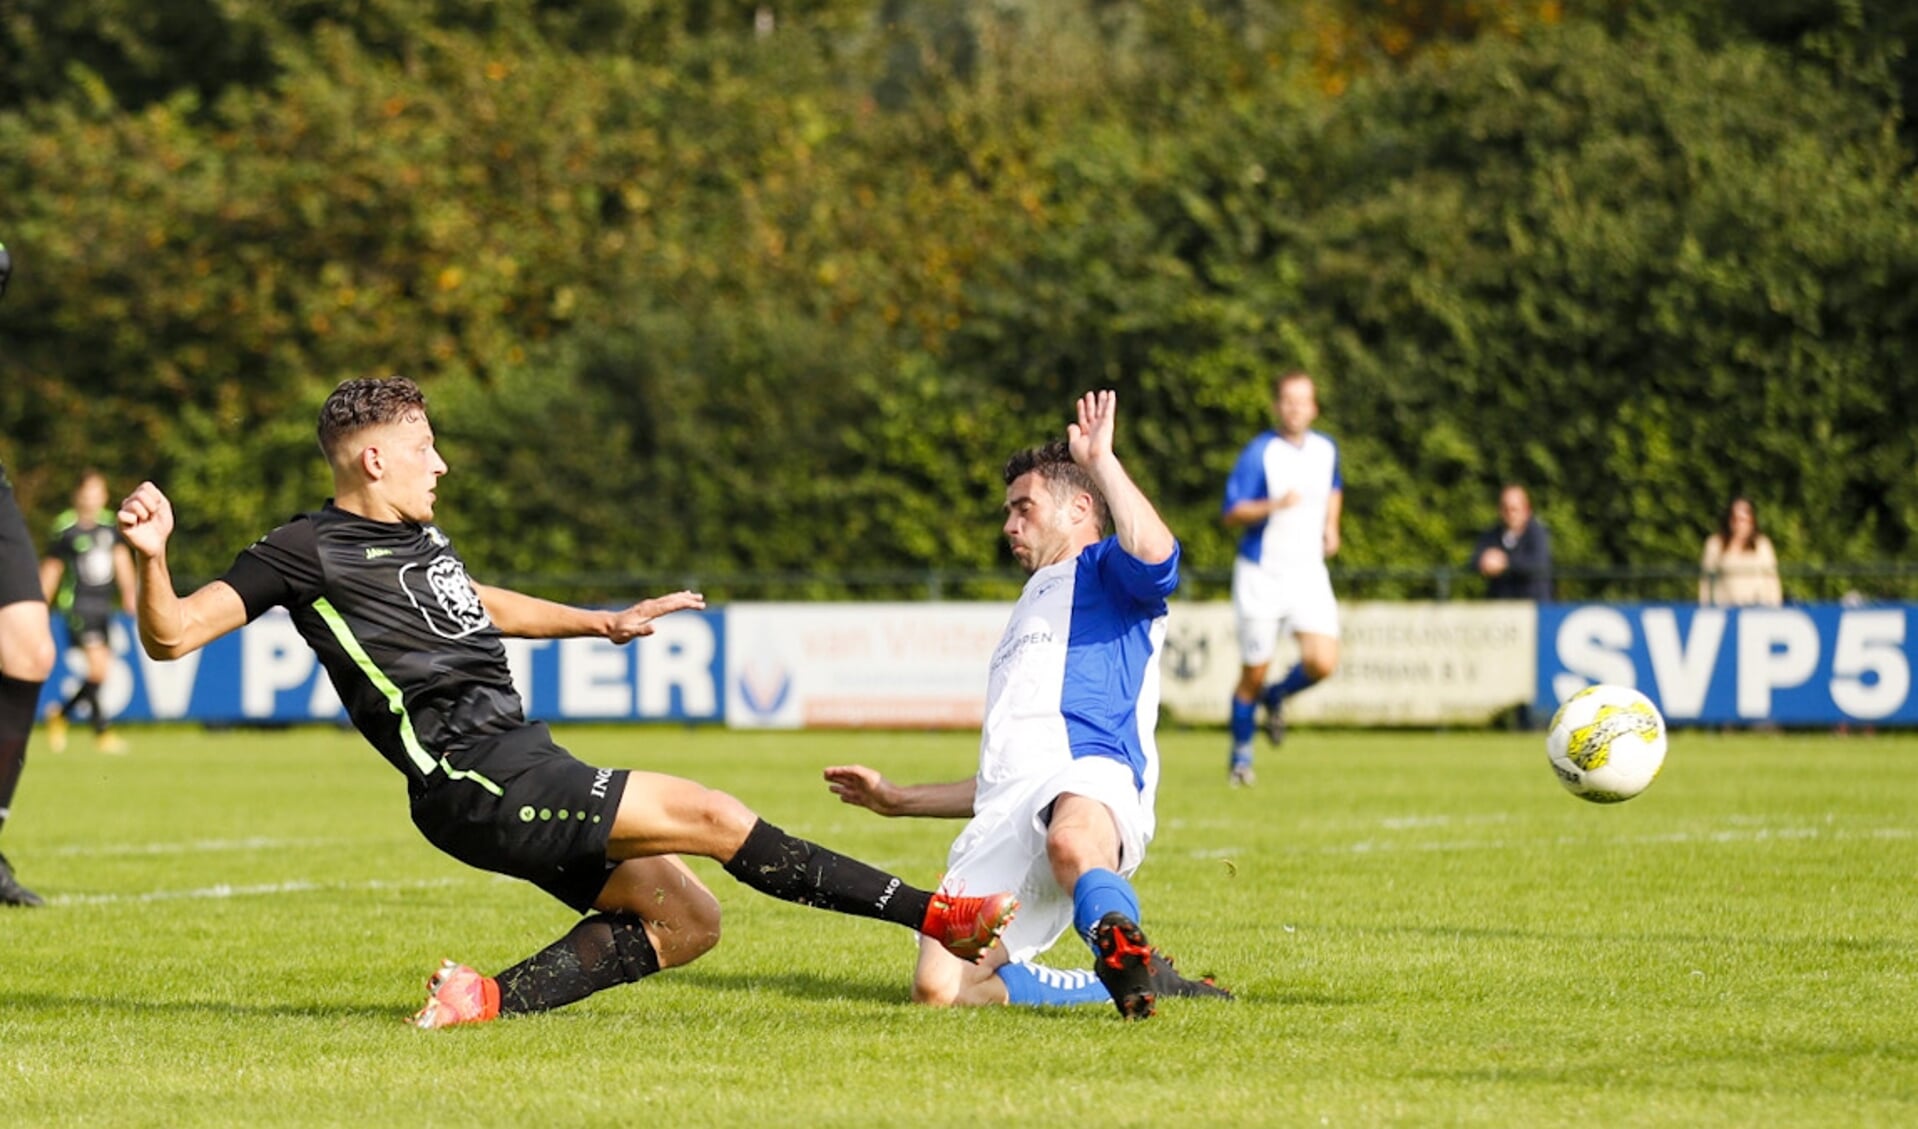 Bart Keuken in de actie die de 0-2 voor Veenendaal zou betekenen in de derby tegen SV Panter.